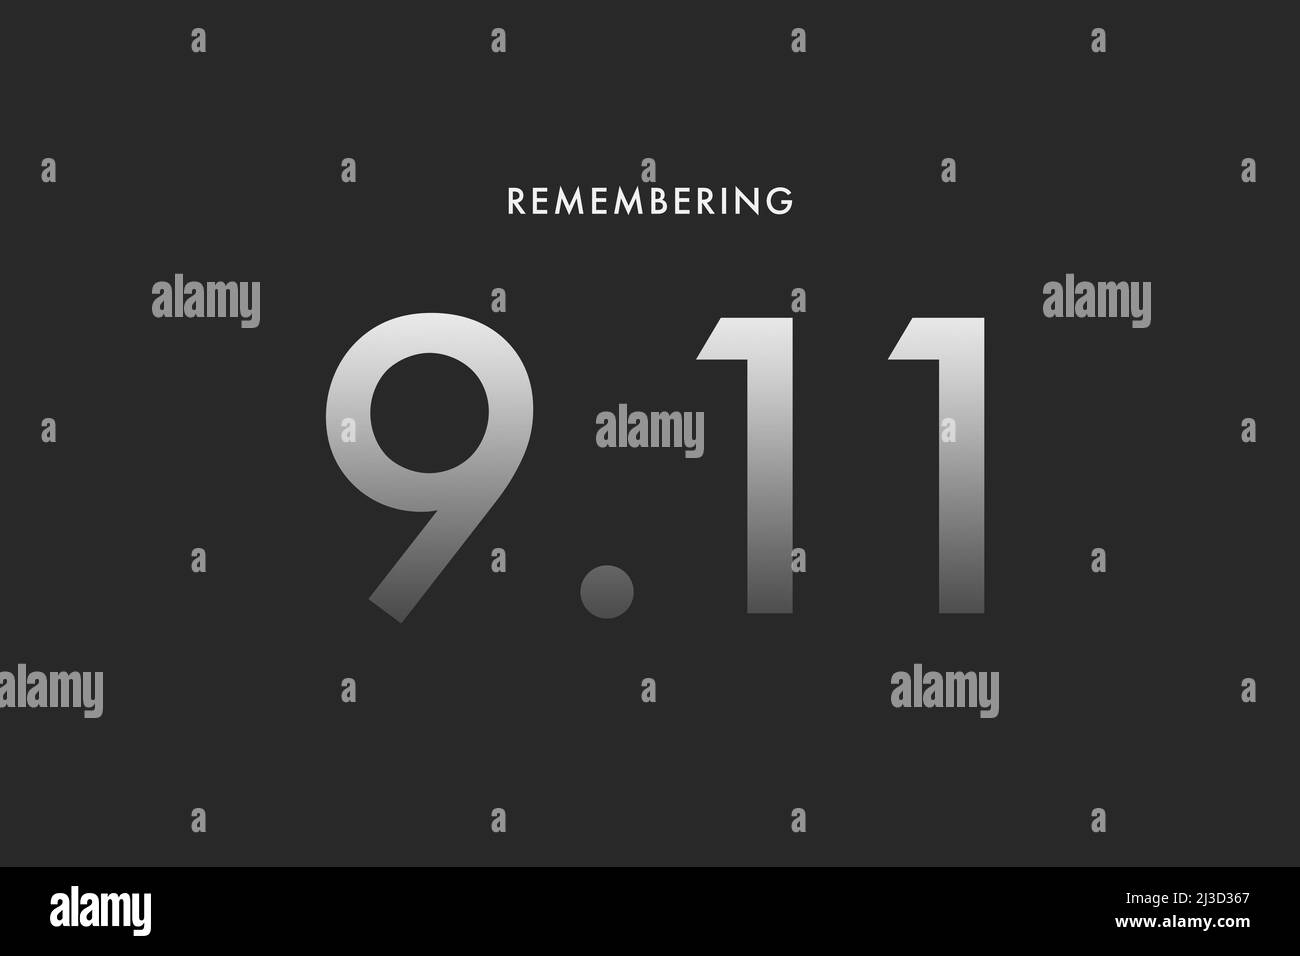 9 11. Oder 11. September Gedenkdarstellung. Erinnern Sie Sich An Den Patriot Day. Wir werden die Terroranschläge von 2001 nie vergessen Stockfoto